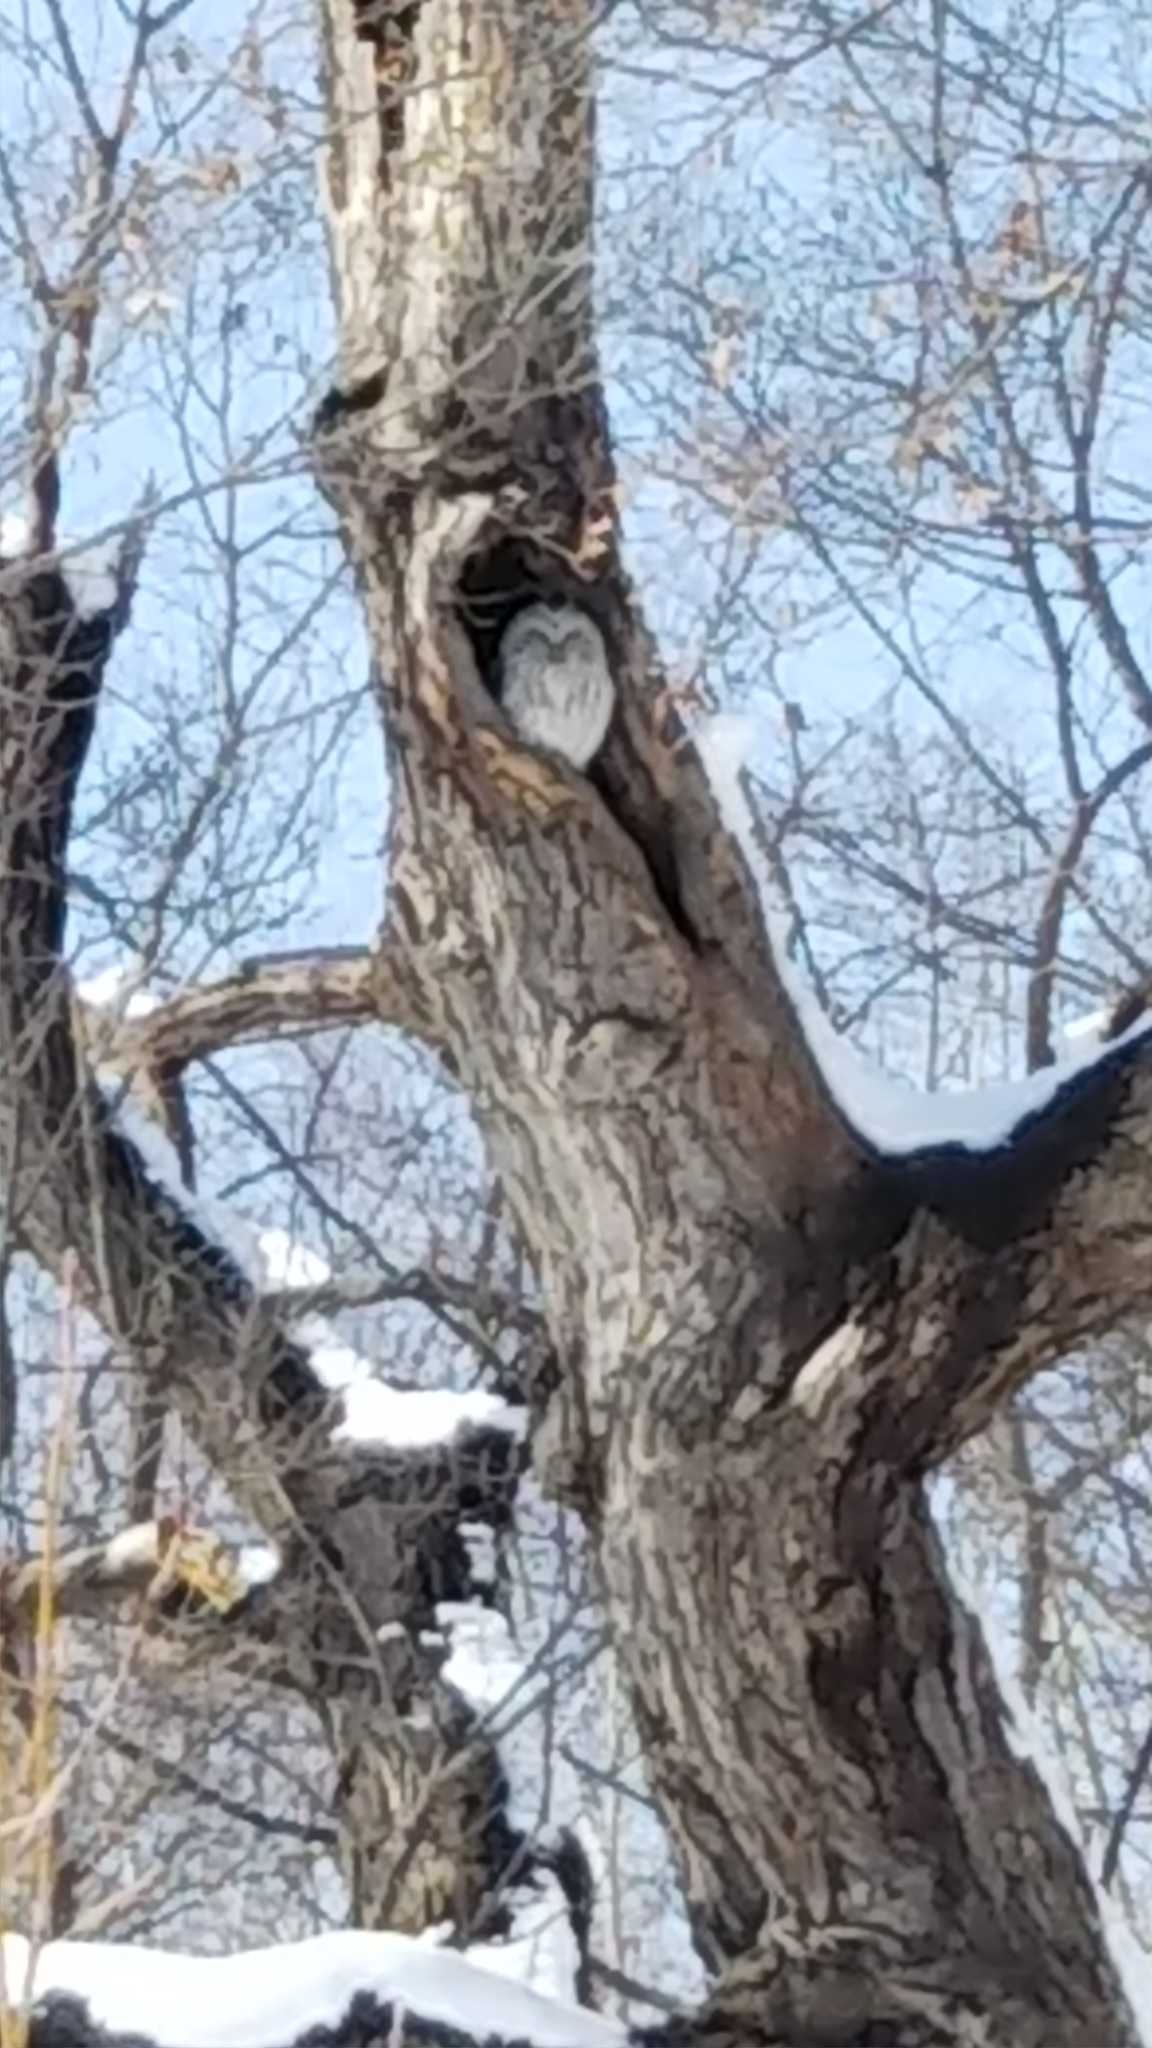 Ural Owl